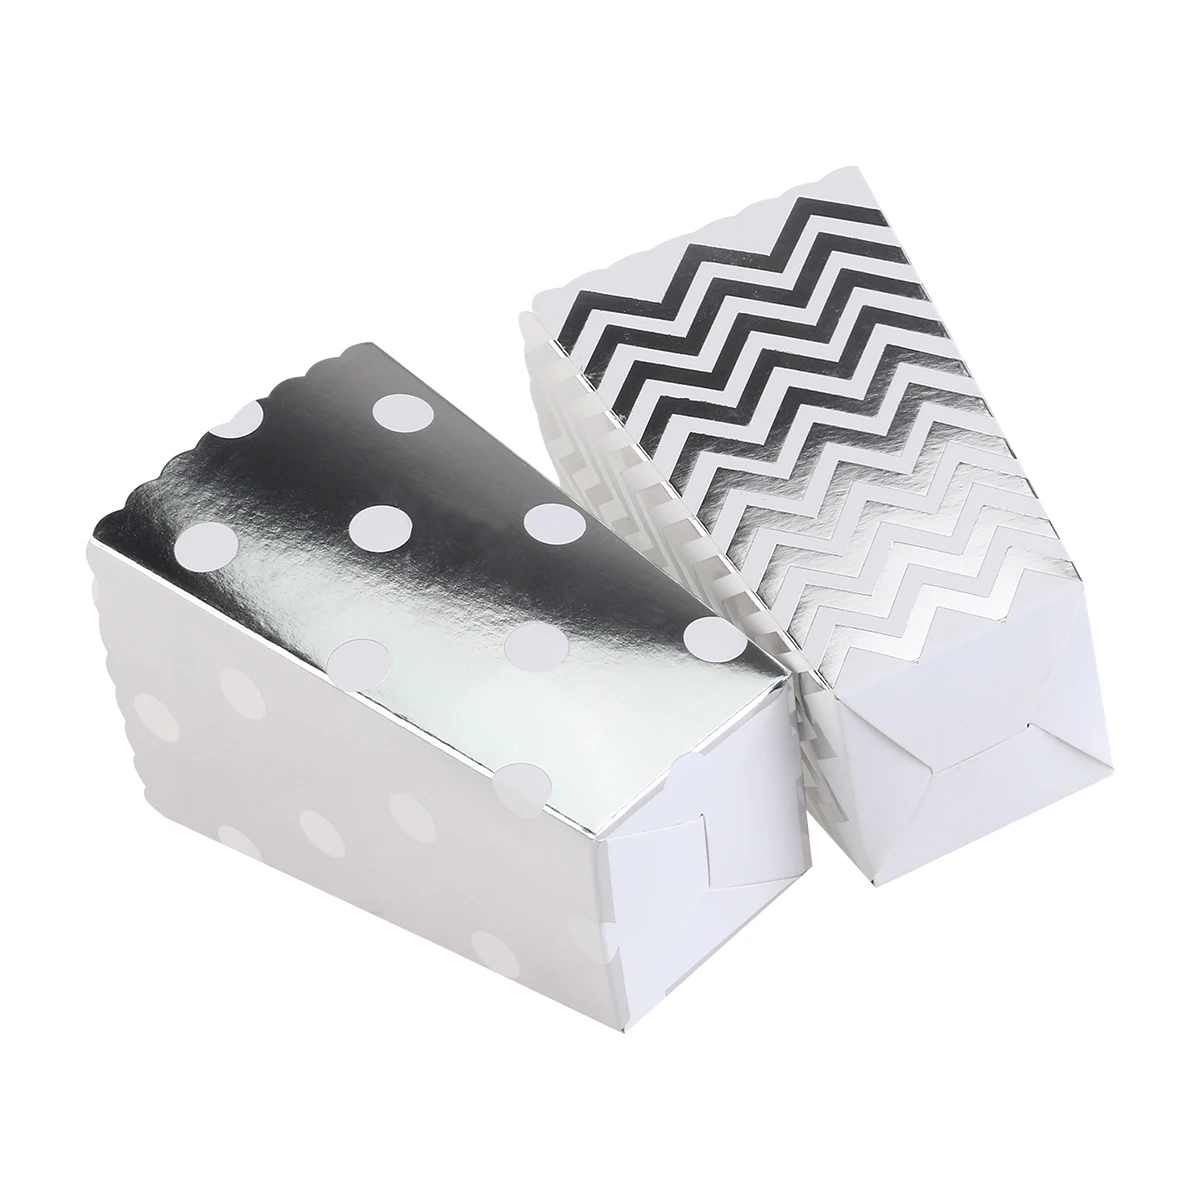 50 шт. коробки для попкорна желтый дизайн трио миниатюрный зубчатый край картонные вечерние коробки/Sanck сумки товары для фильмов(серебро